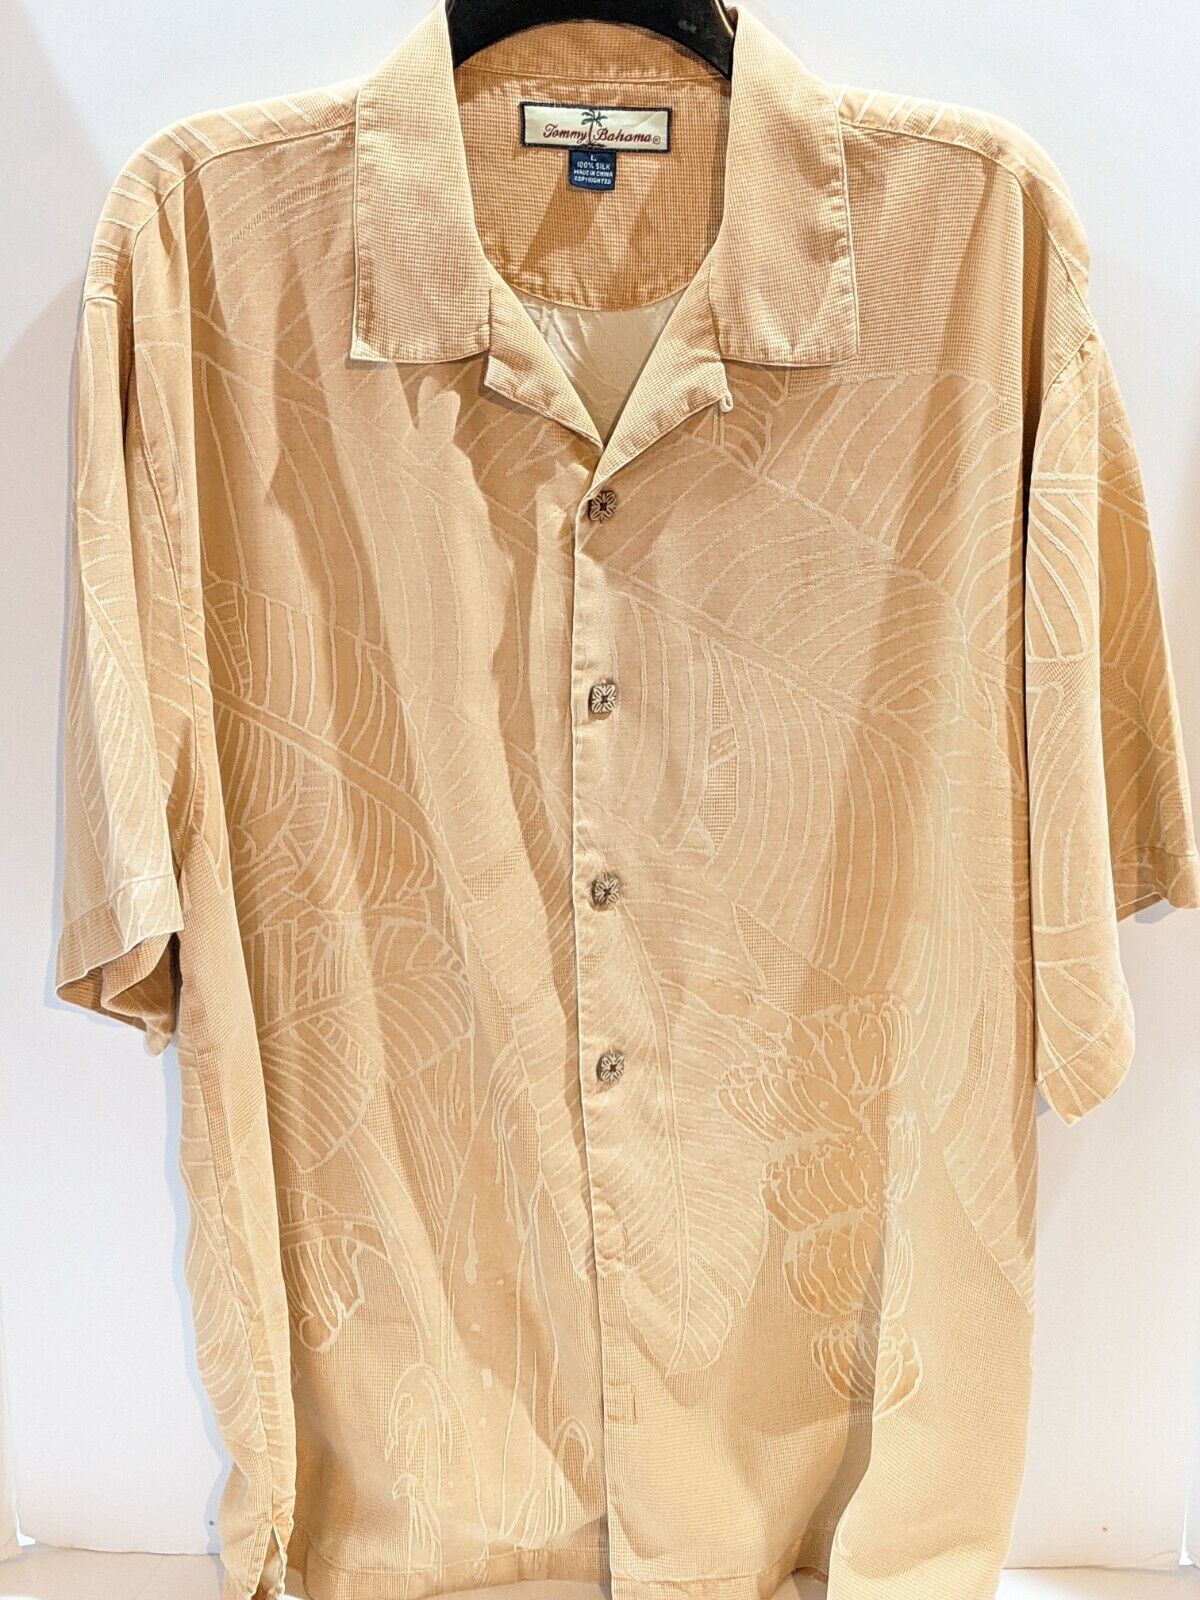 Tommy Bahama Large Silk Shirt - image 4